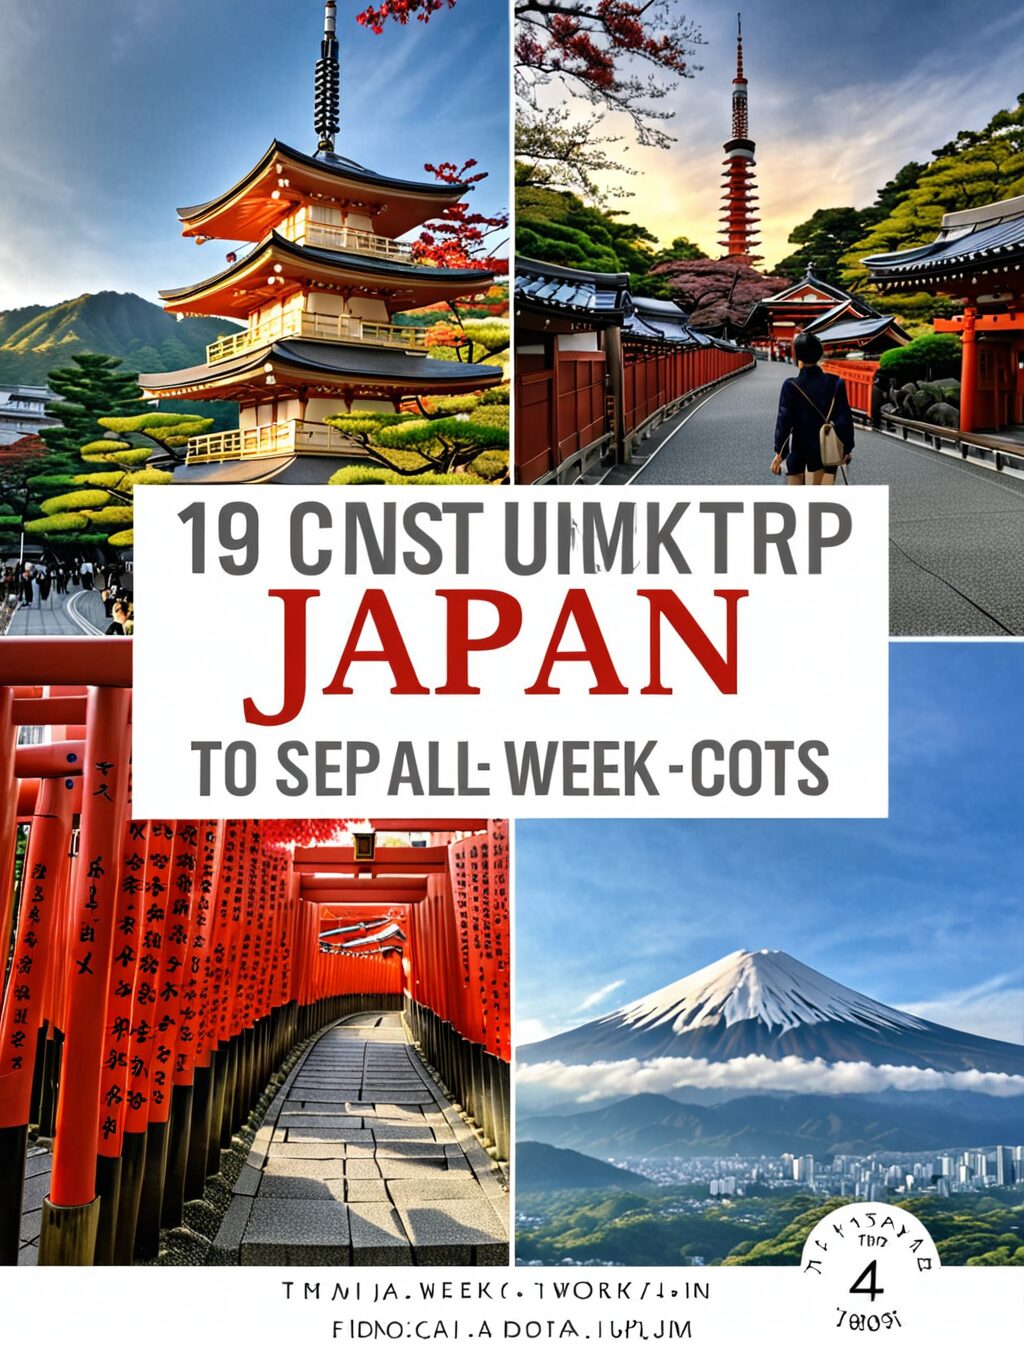 japan trip cost 1 week